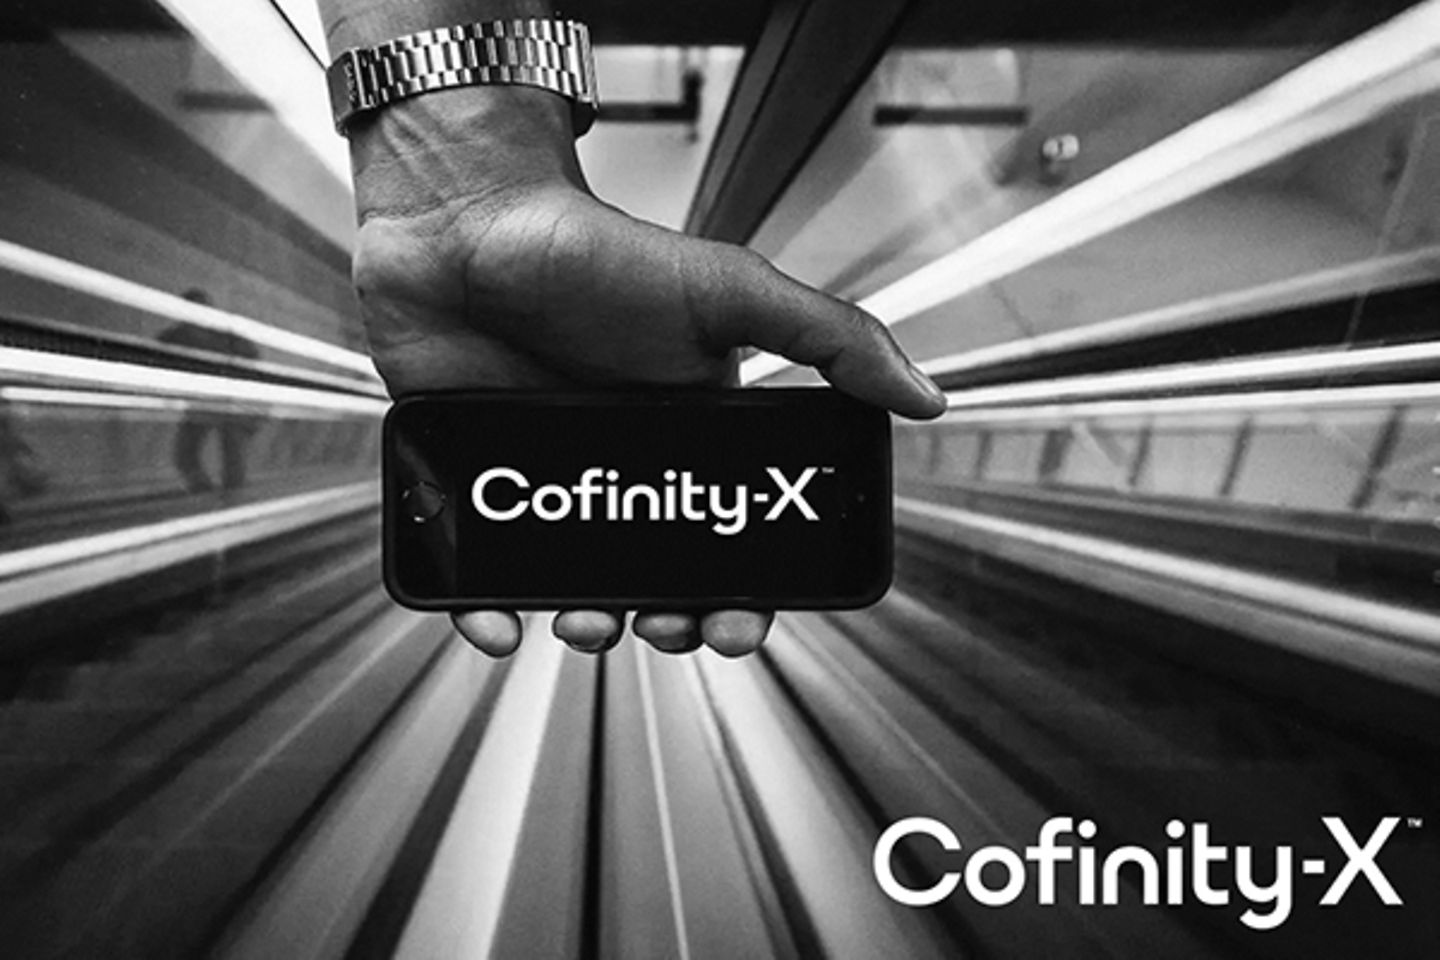 Een hand die een smartphone met het logo van Cofinity-X vasthoudt